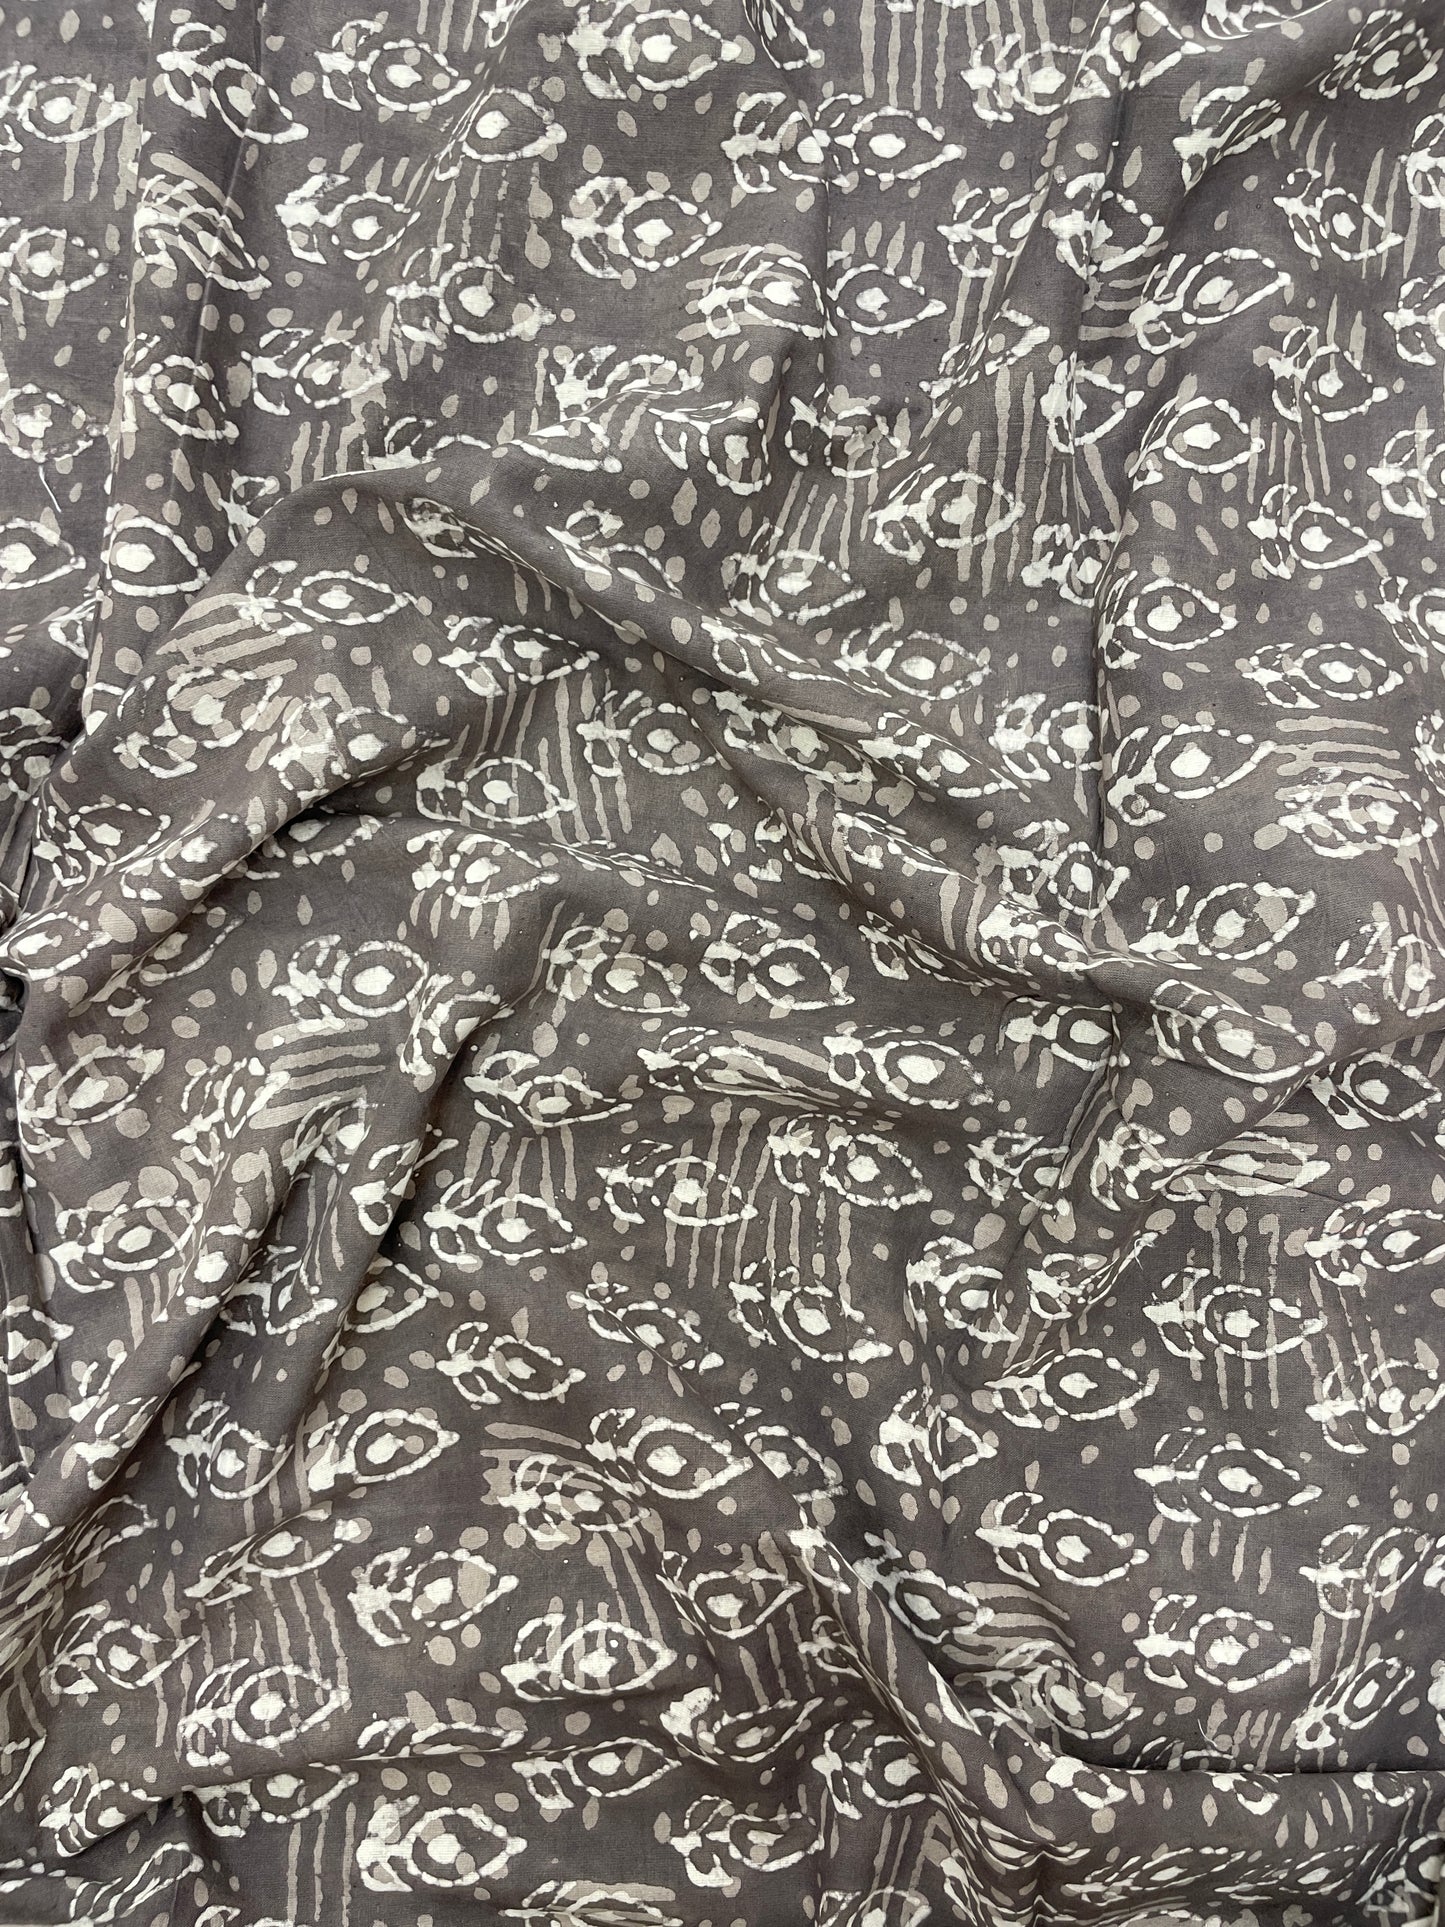 Exquisite Elegant Grey Block Print On Cotton Fabric